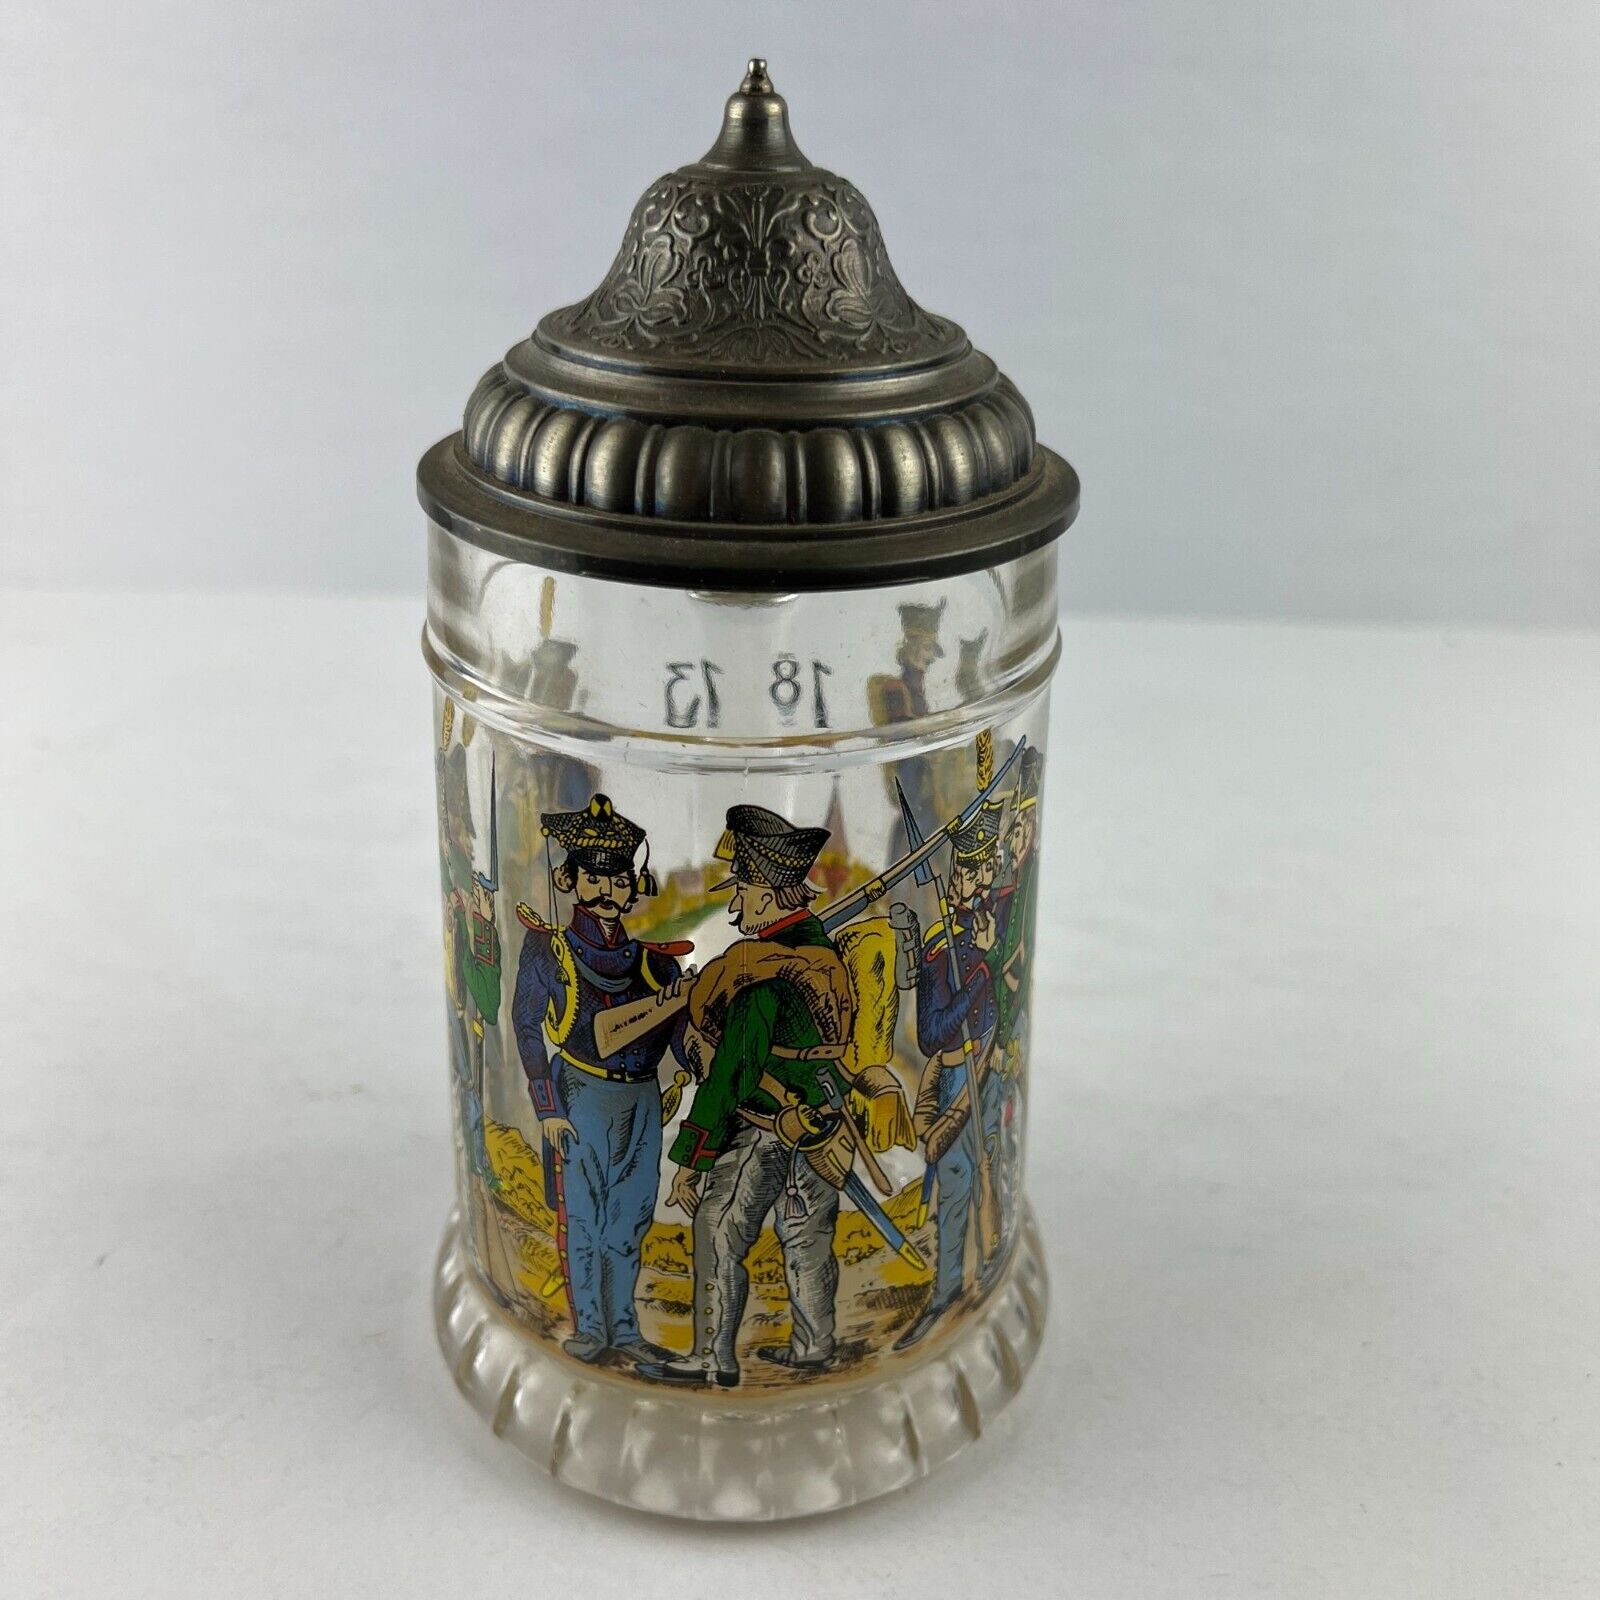 BMF-N Bierseidel 1813 German Prussian Army Commemorative Glass Beer Stein